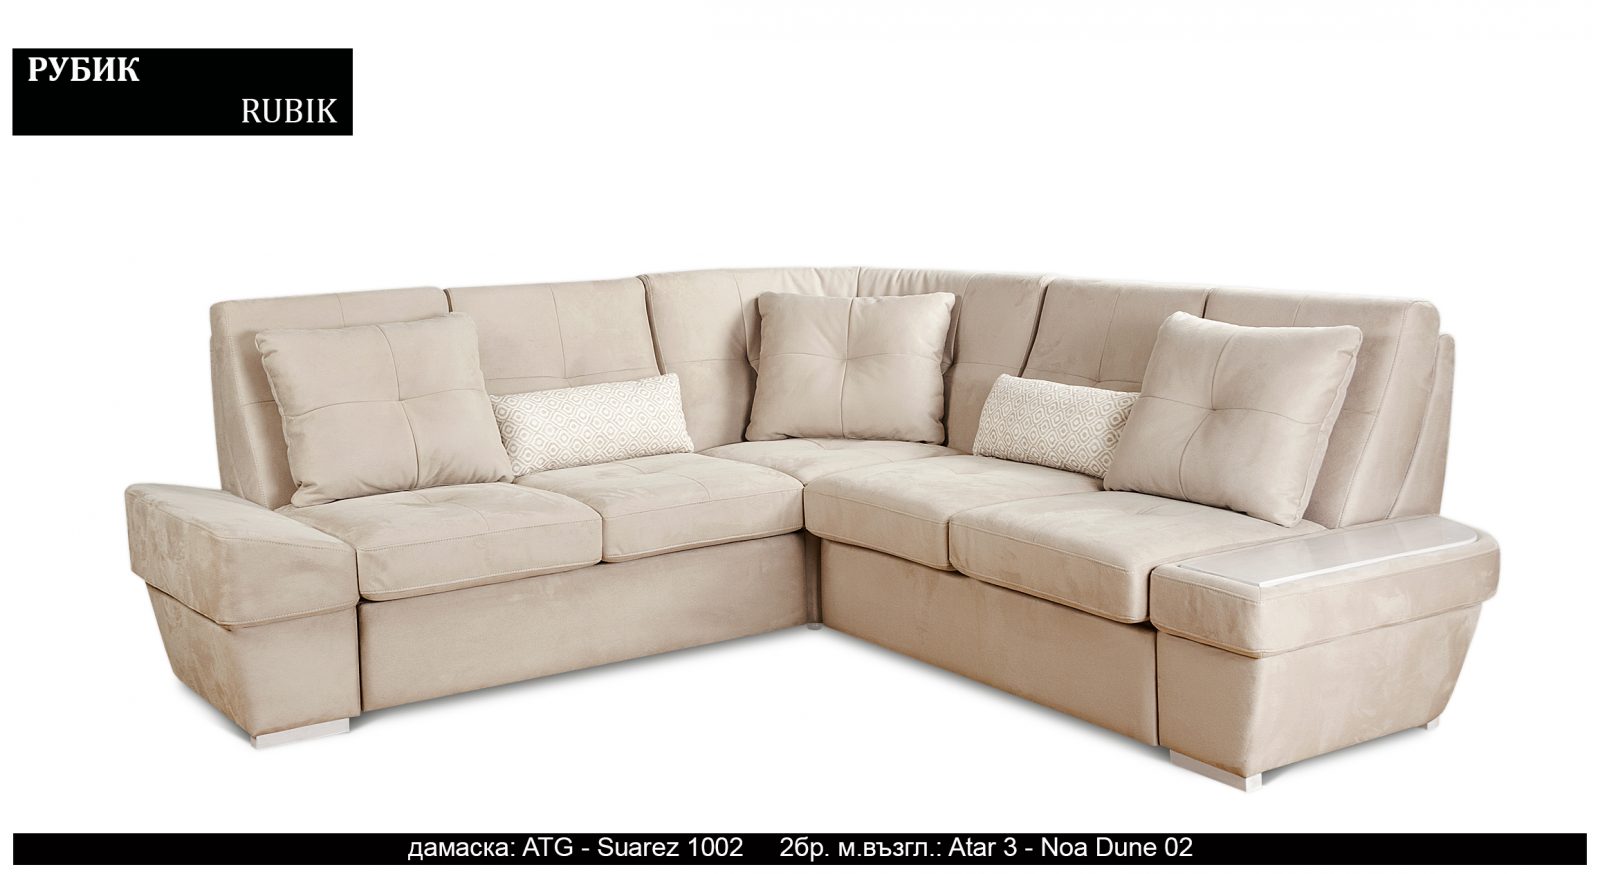 (Български) Разтегателен луксозен диван |»РУБИК»| Руди-Ан